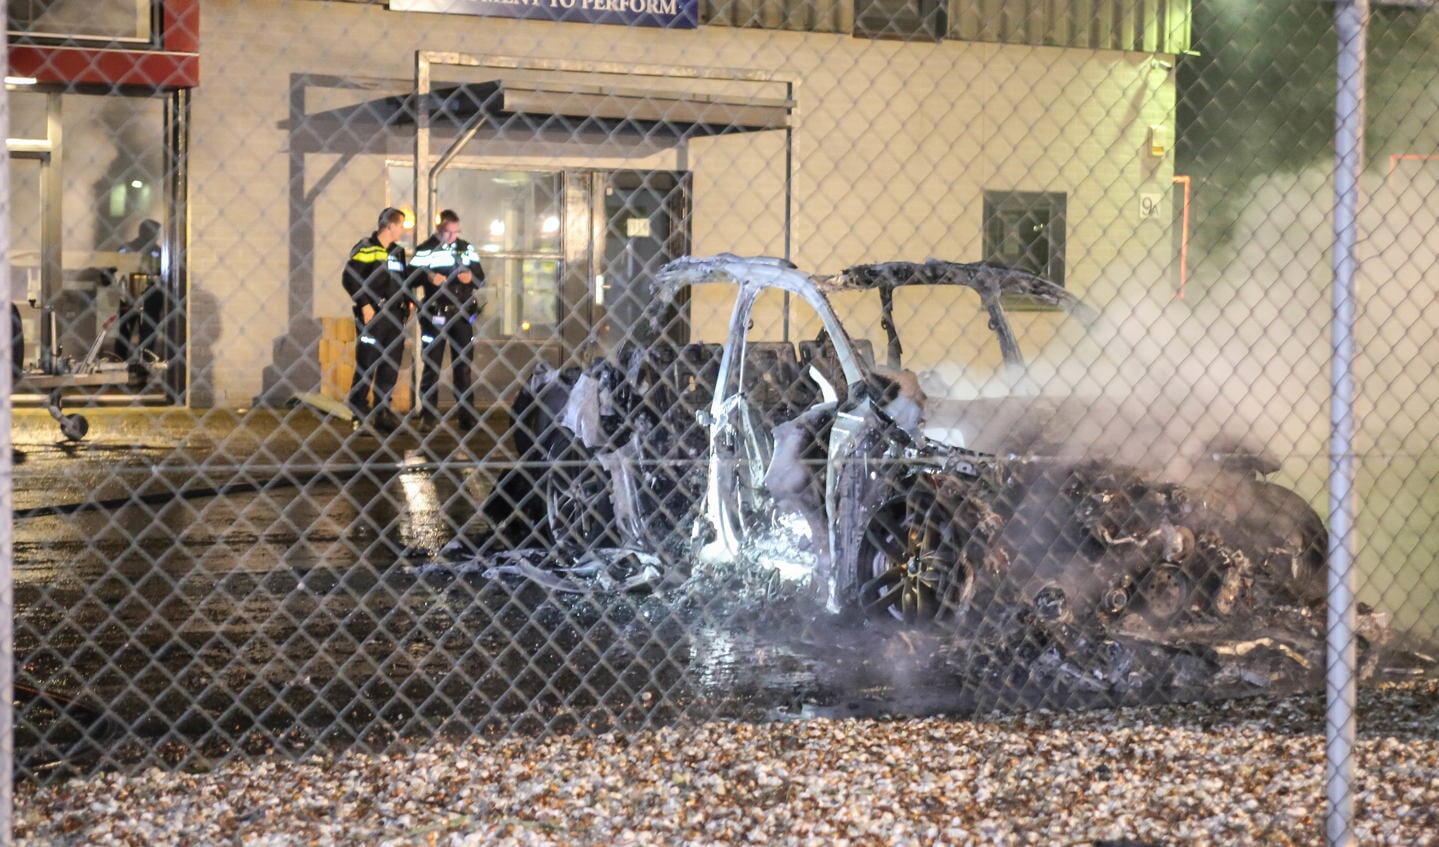 De personenauto branden volledig uit ( Foto's : Maickel Keijzers / Hendriks Multimedia )